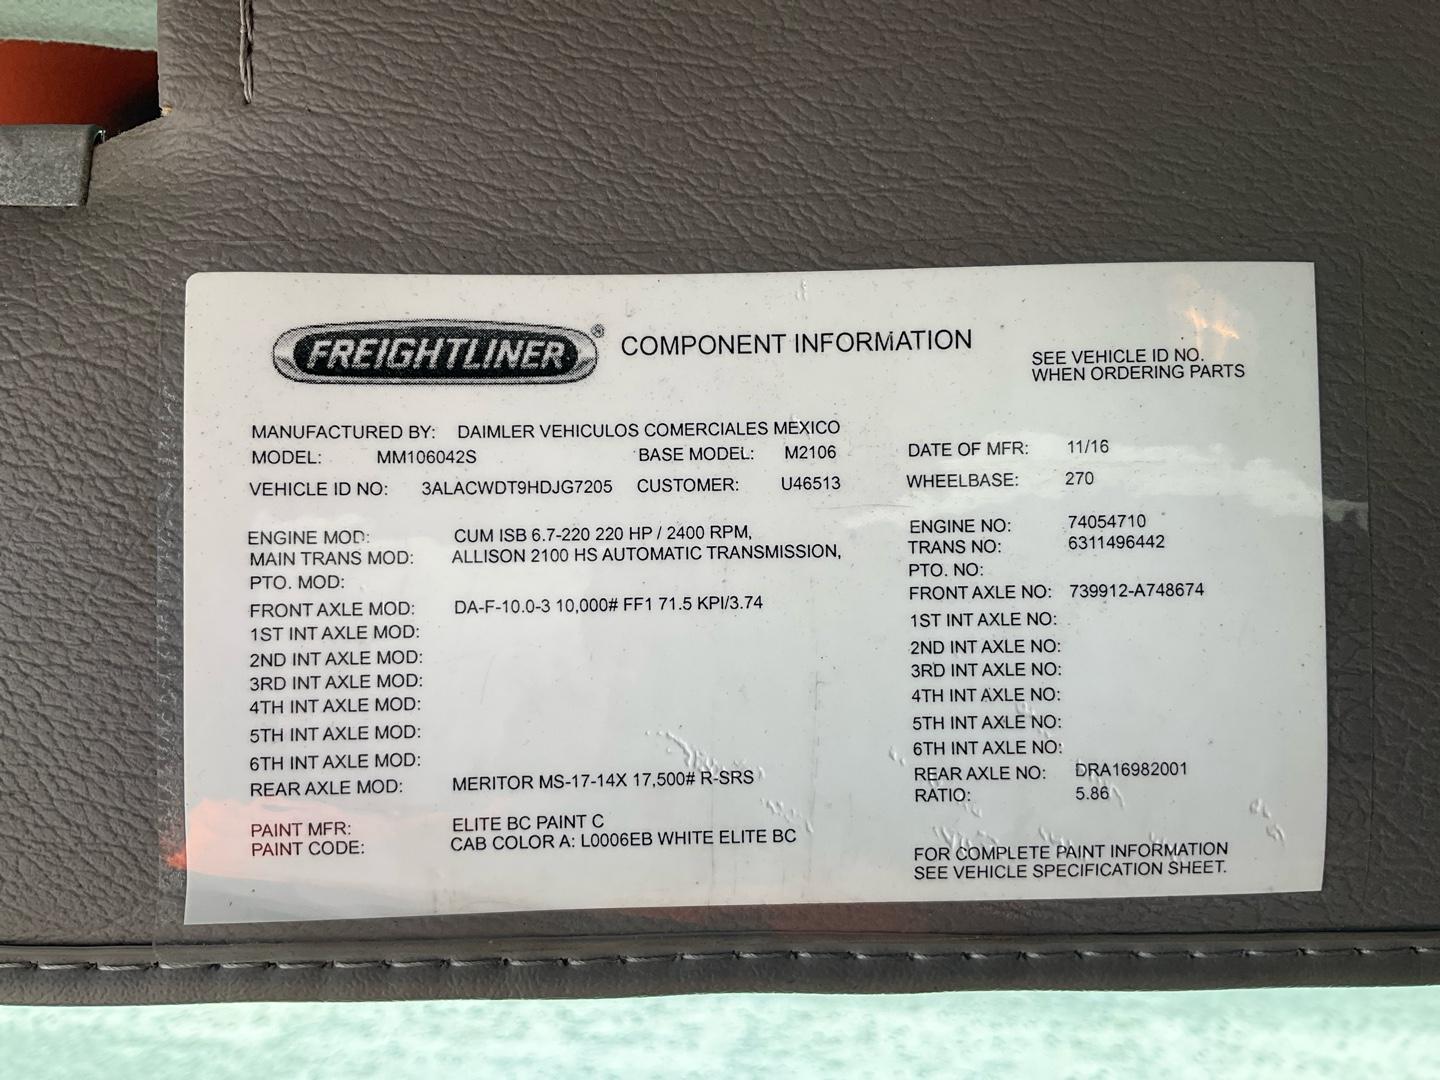 2017 FREIGHTLINER M2-106 Serial Number: 3ALACWDT9HDJG7205